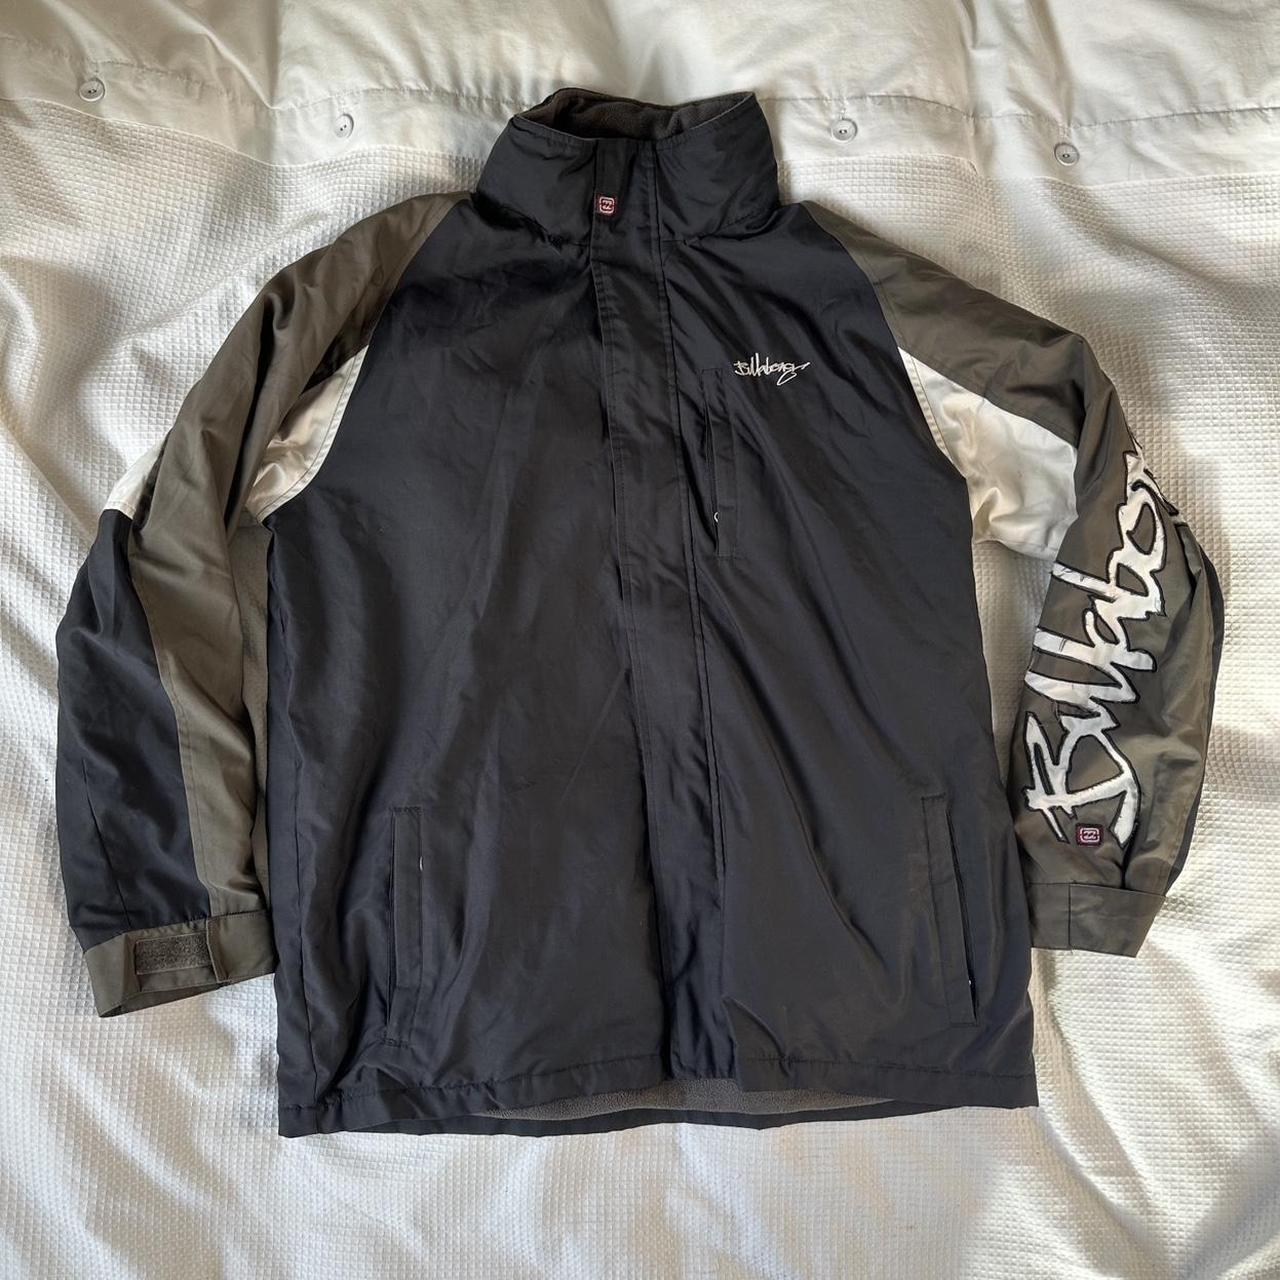 Vintage Billabong Jacket - Size L men’s (fits more... - Depop